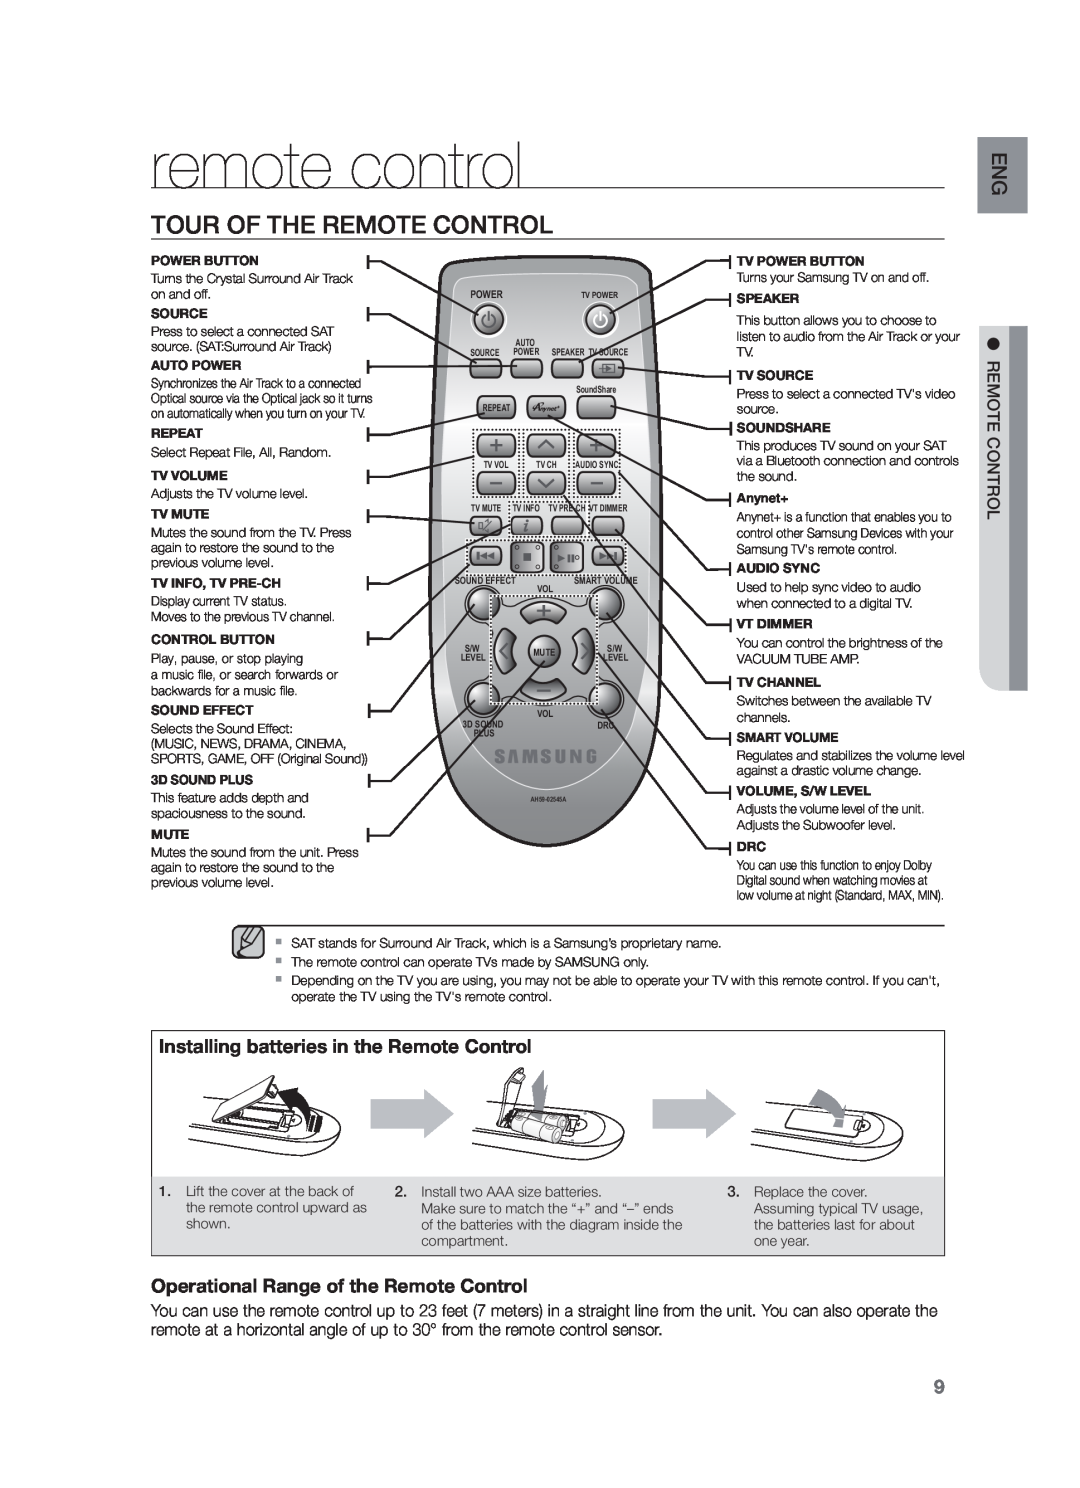 Samsung HW-F751/XN, HW-F751/TK, HW-F751/EN manual remote control, Tour Of The Remote Control 